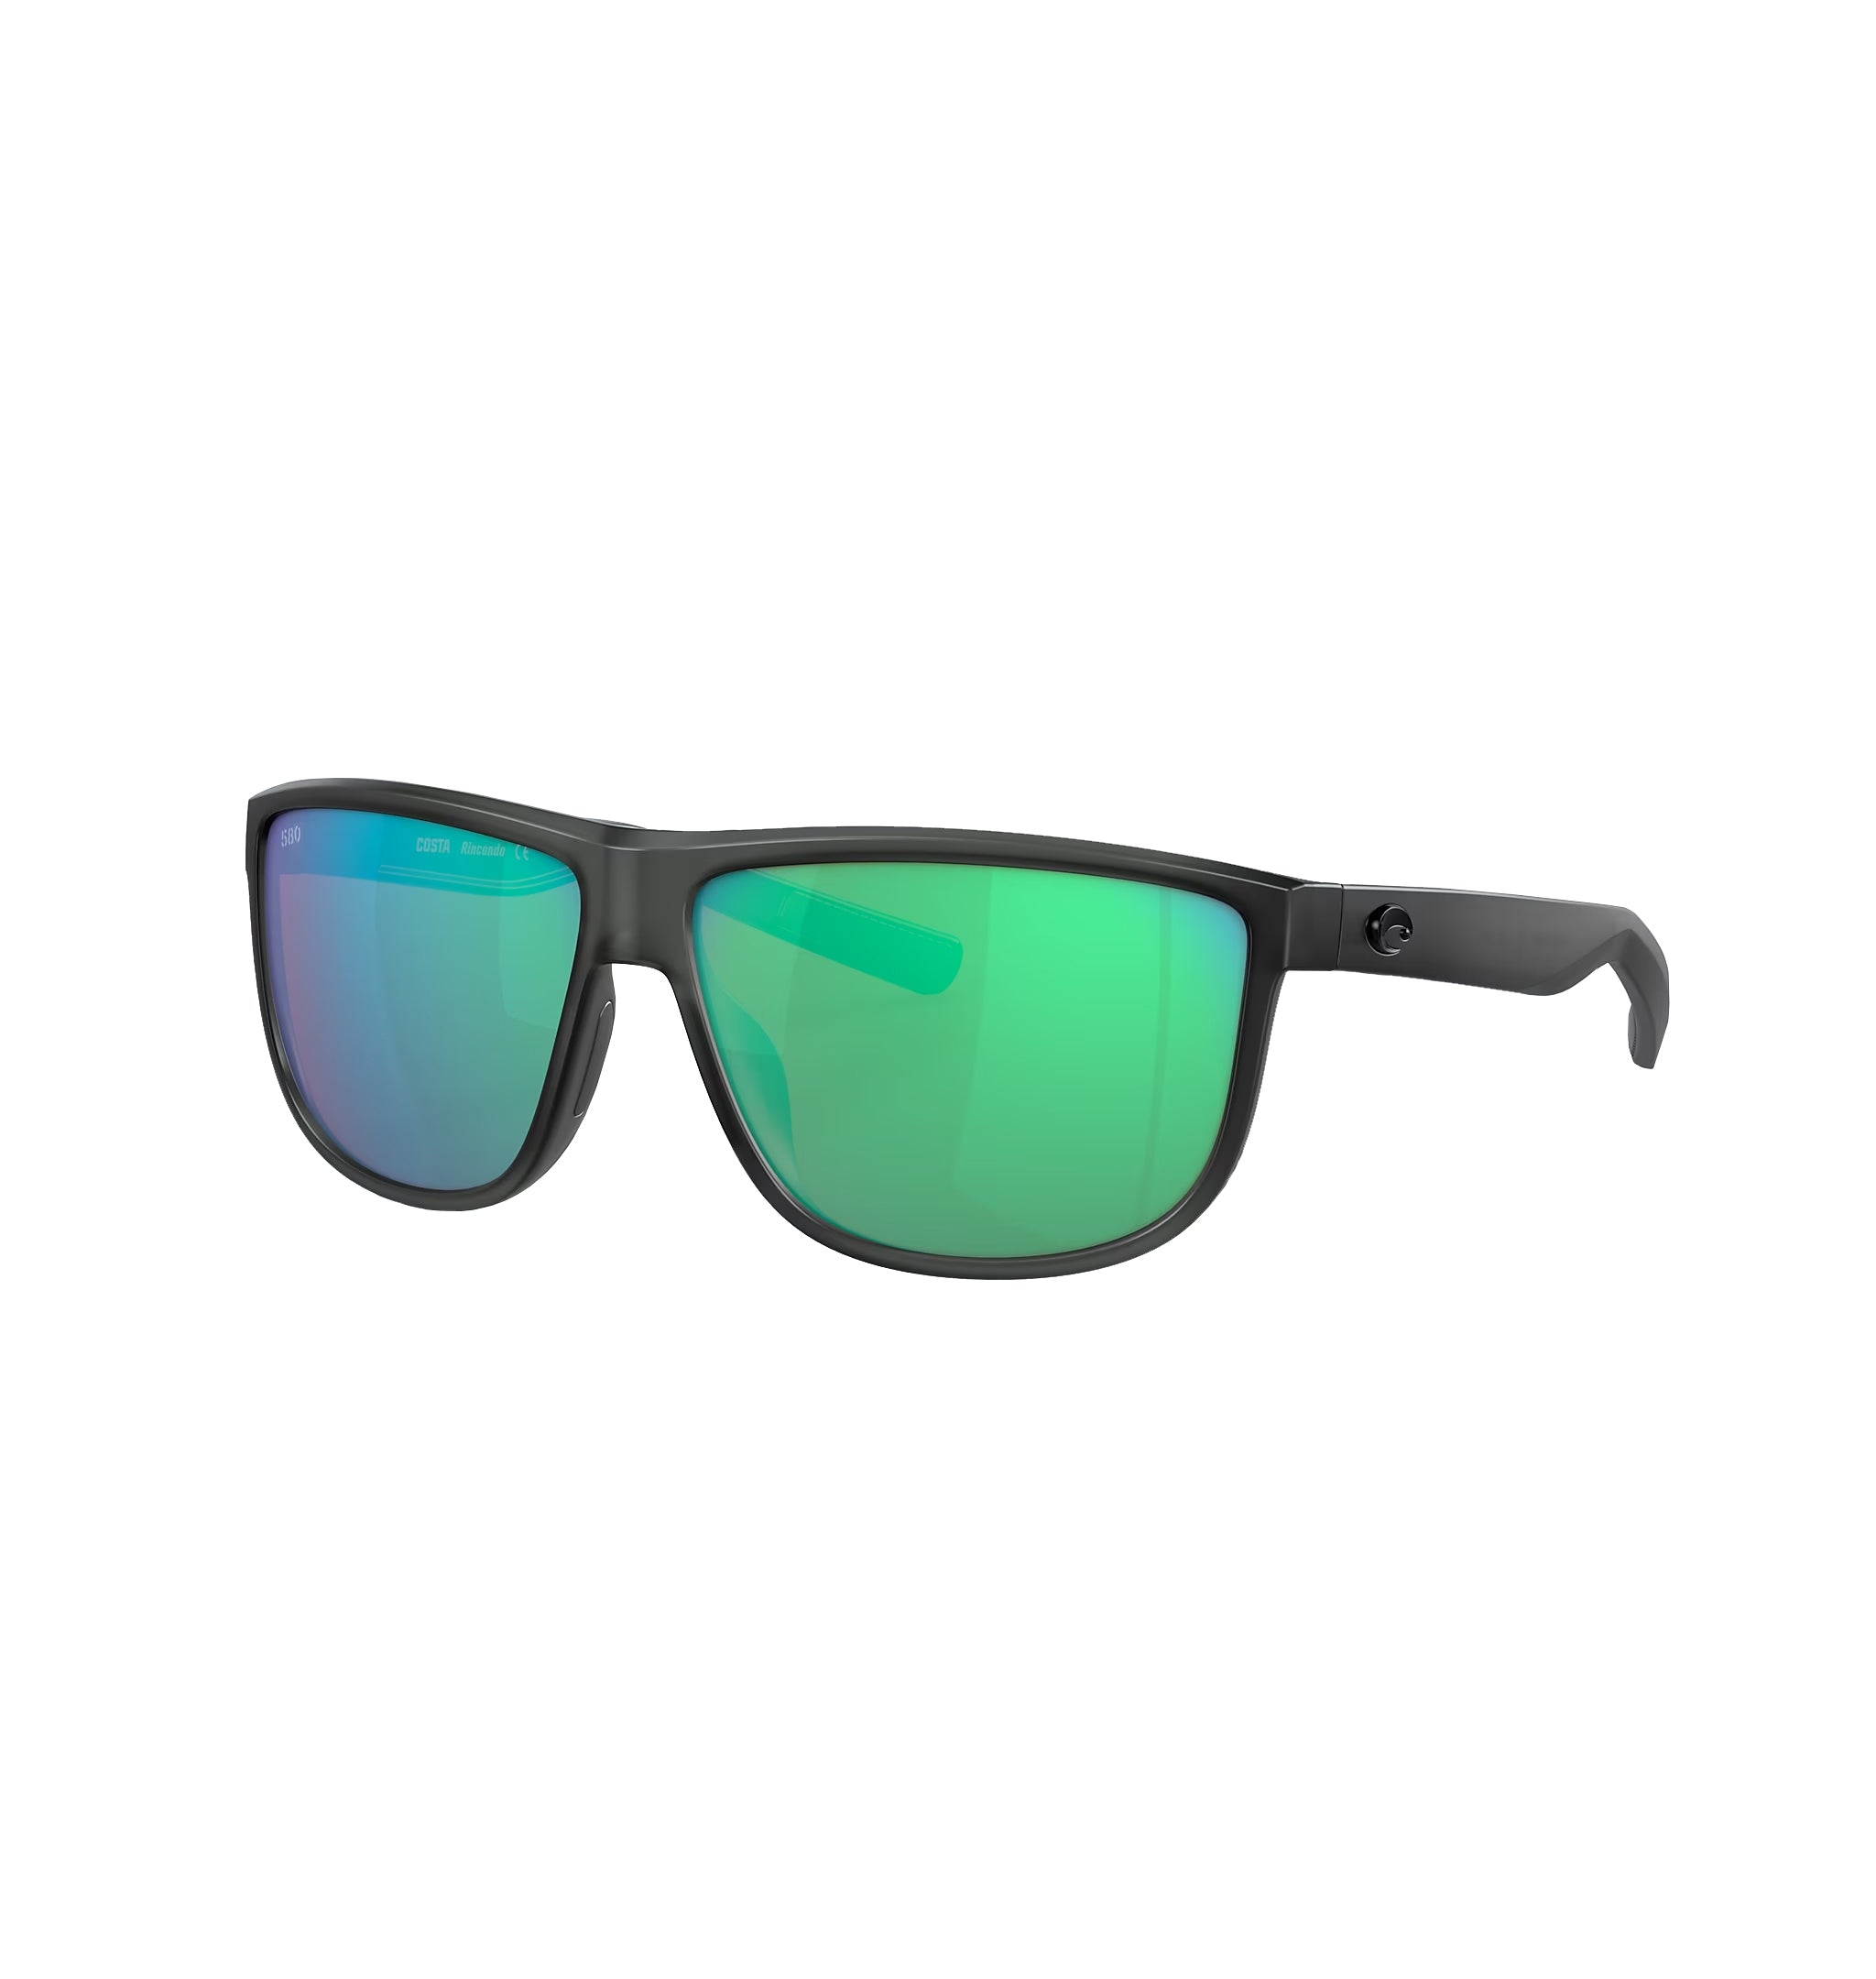 Costa Del Mar Rincondo Polarized Sunglasses MatteSmokeCrystal GreenMirror 580G